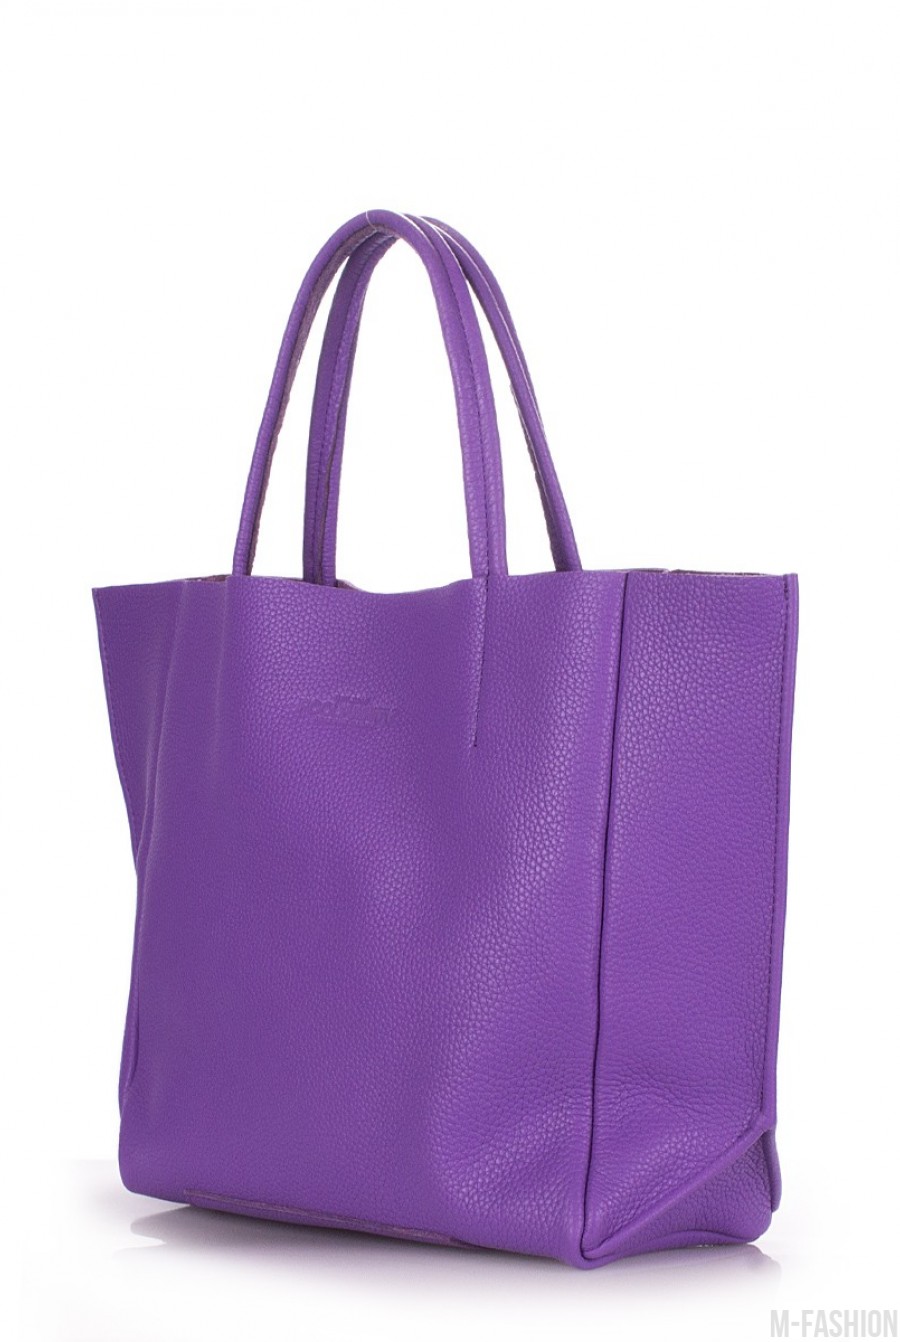 Кожаная фиолетовая сумка Soho классического дизайна- Фото 2